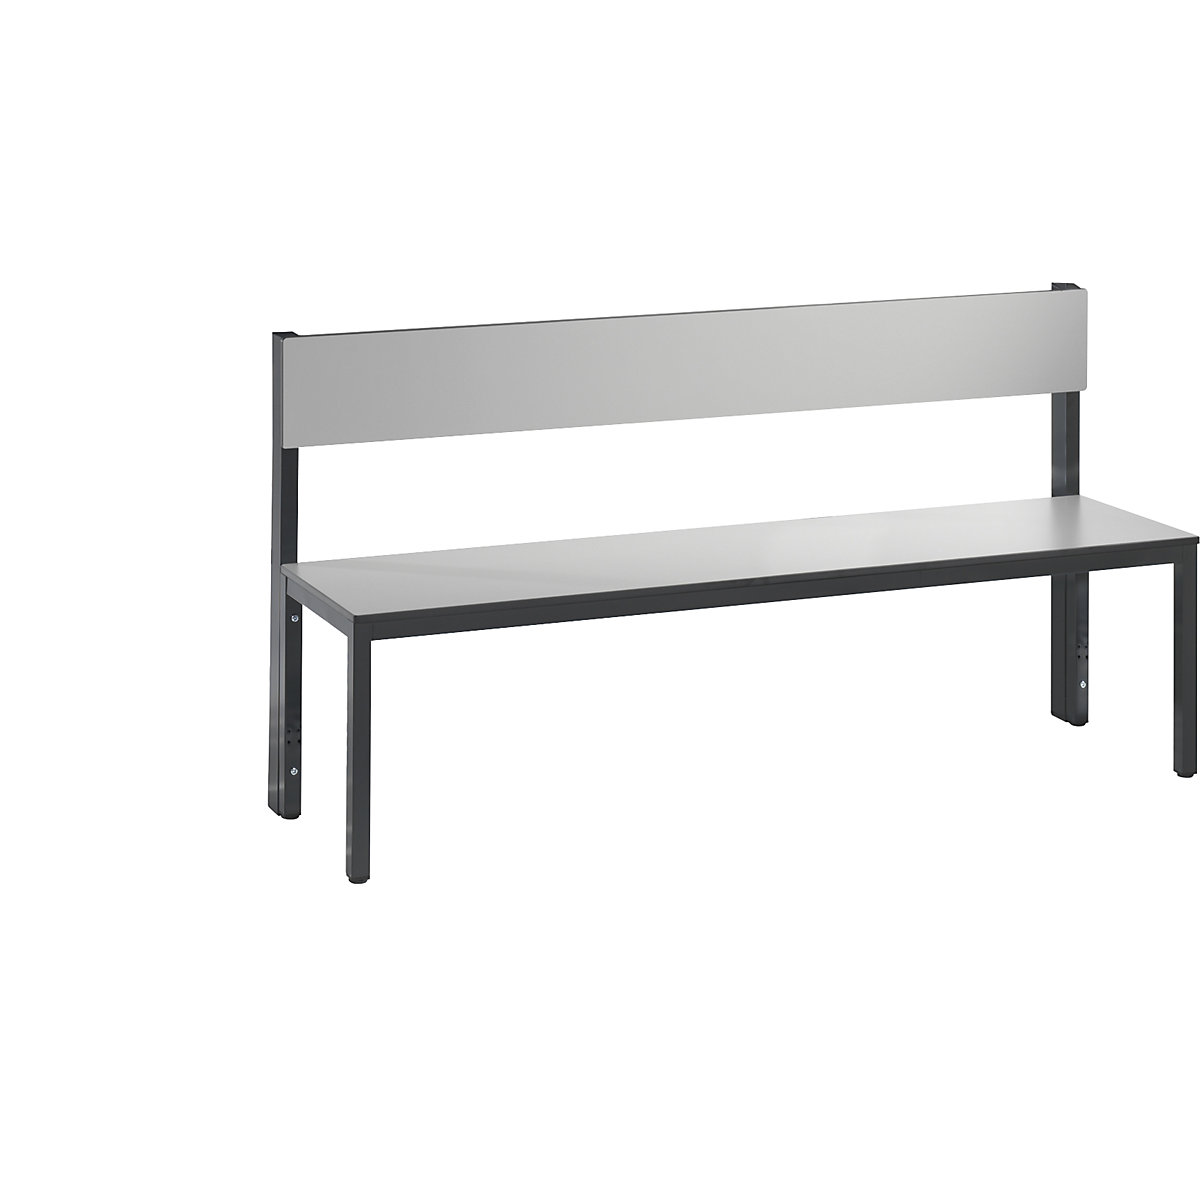 Ławka do szatni BASIC PLUS, jednostronna – C+P, powierzchnia do siedzenia z HPL, średniej wysokości, dł. 1500 mm, srebrno-szara-4